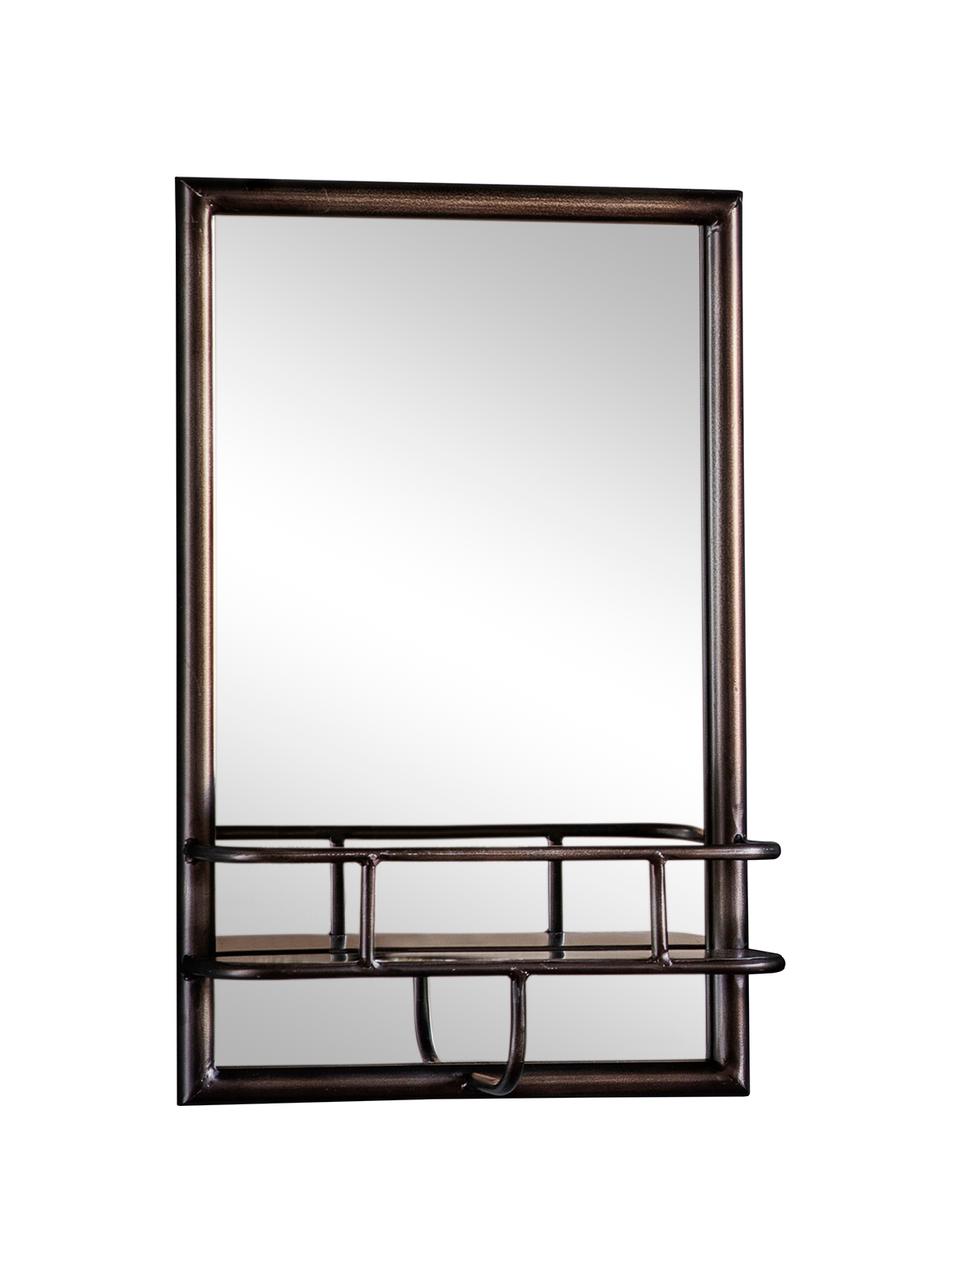 Eckiger Wandspiegel Milton mit schwarzem Metallrahmen und Ablagefläche, Rahmen: Metall, lackiert, Spiegelfläche: Spiegelglas, Schwarz, B 30 x H 48 cm